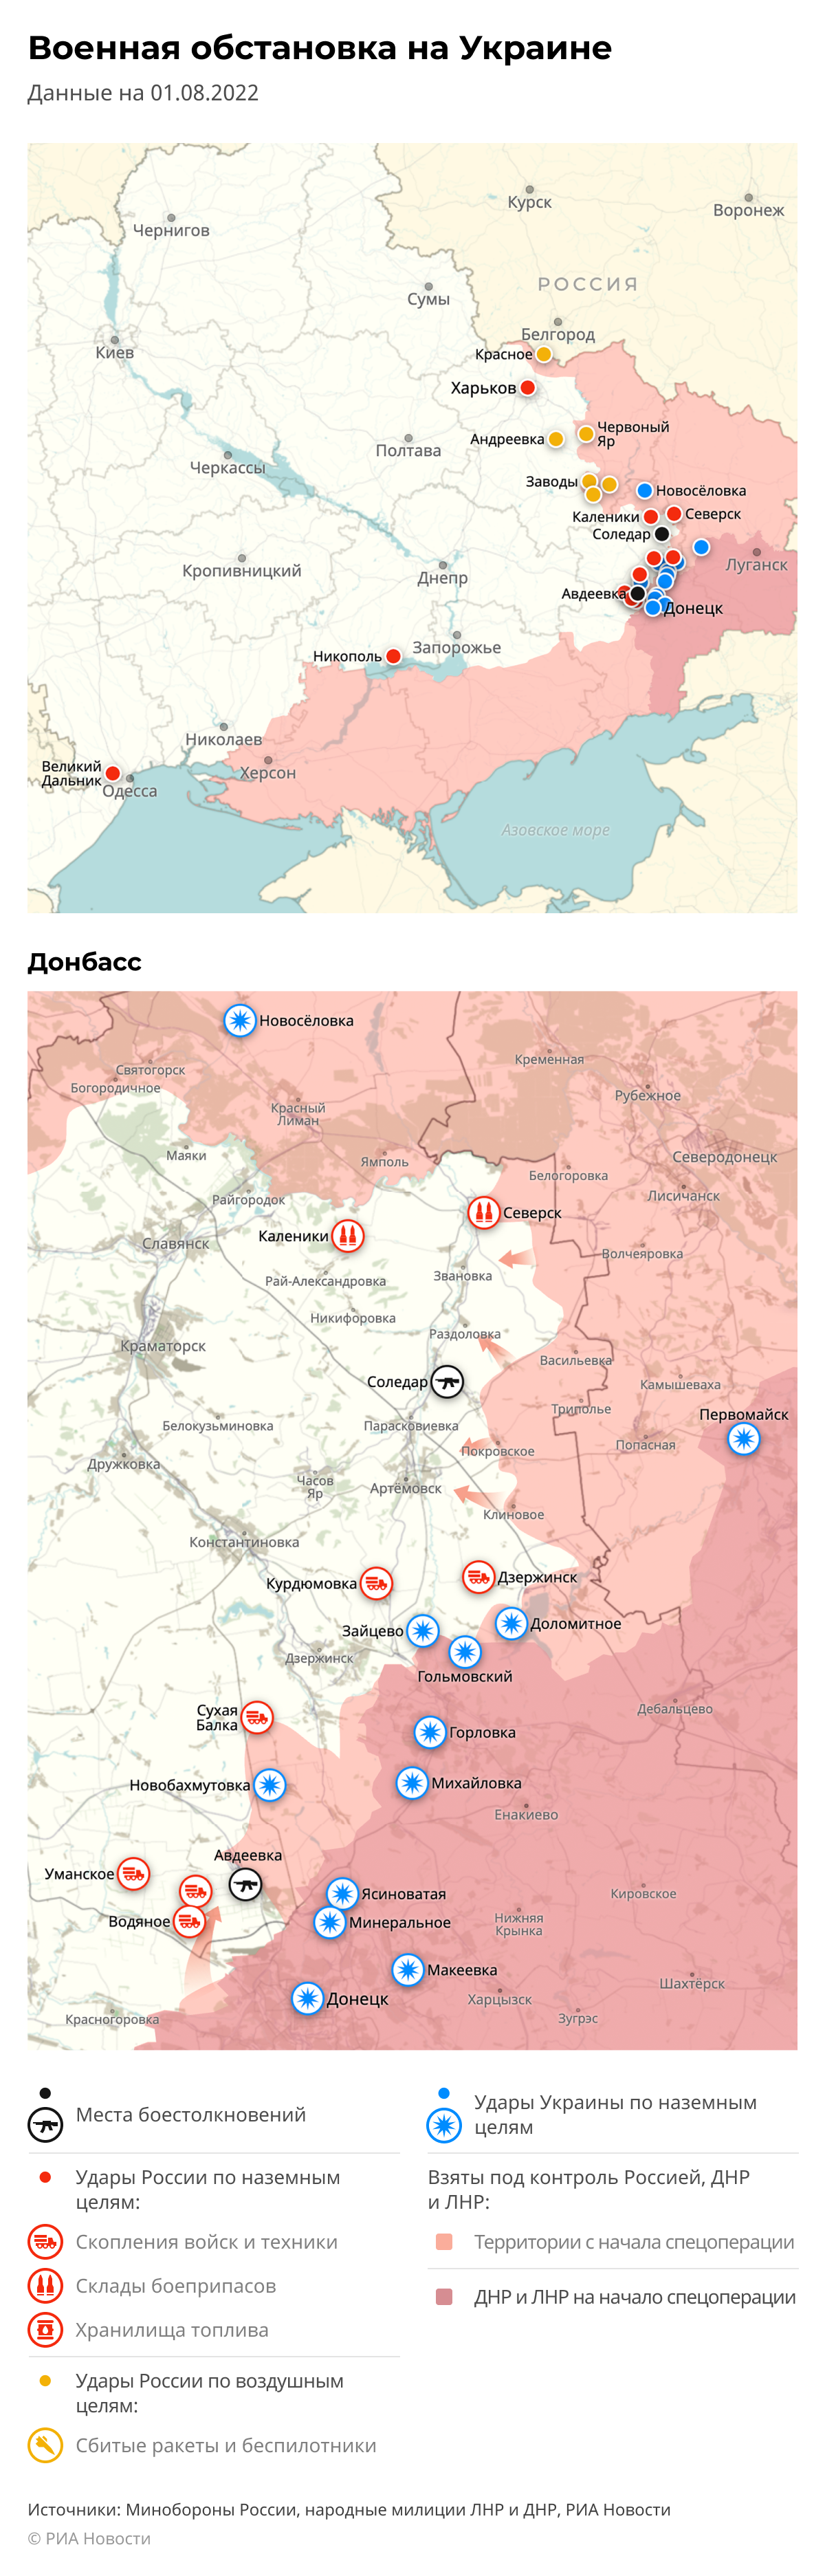 Карта спецоперации Вооруженных сил России на Украине на 01.08.2022